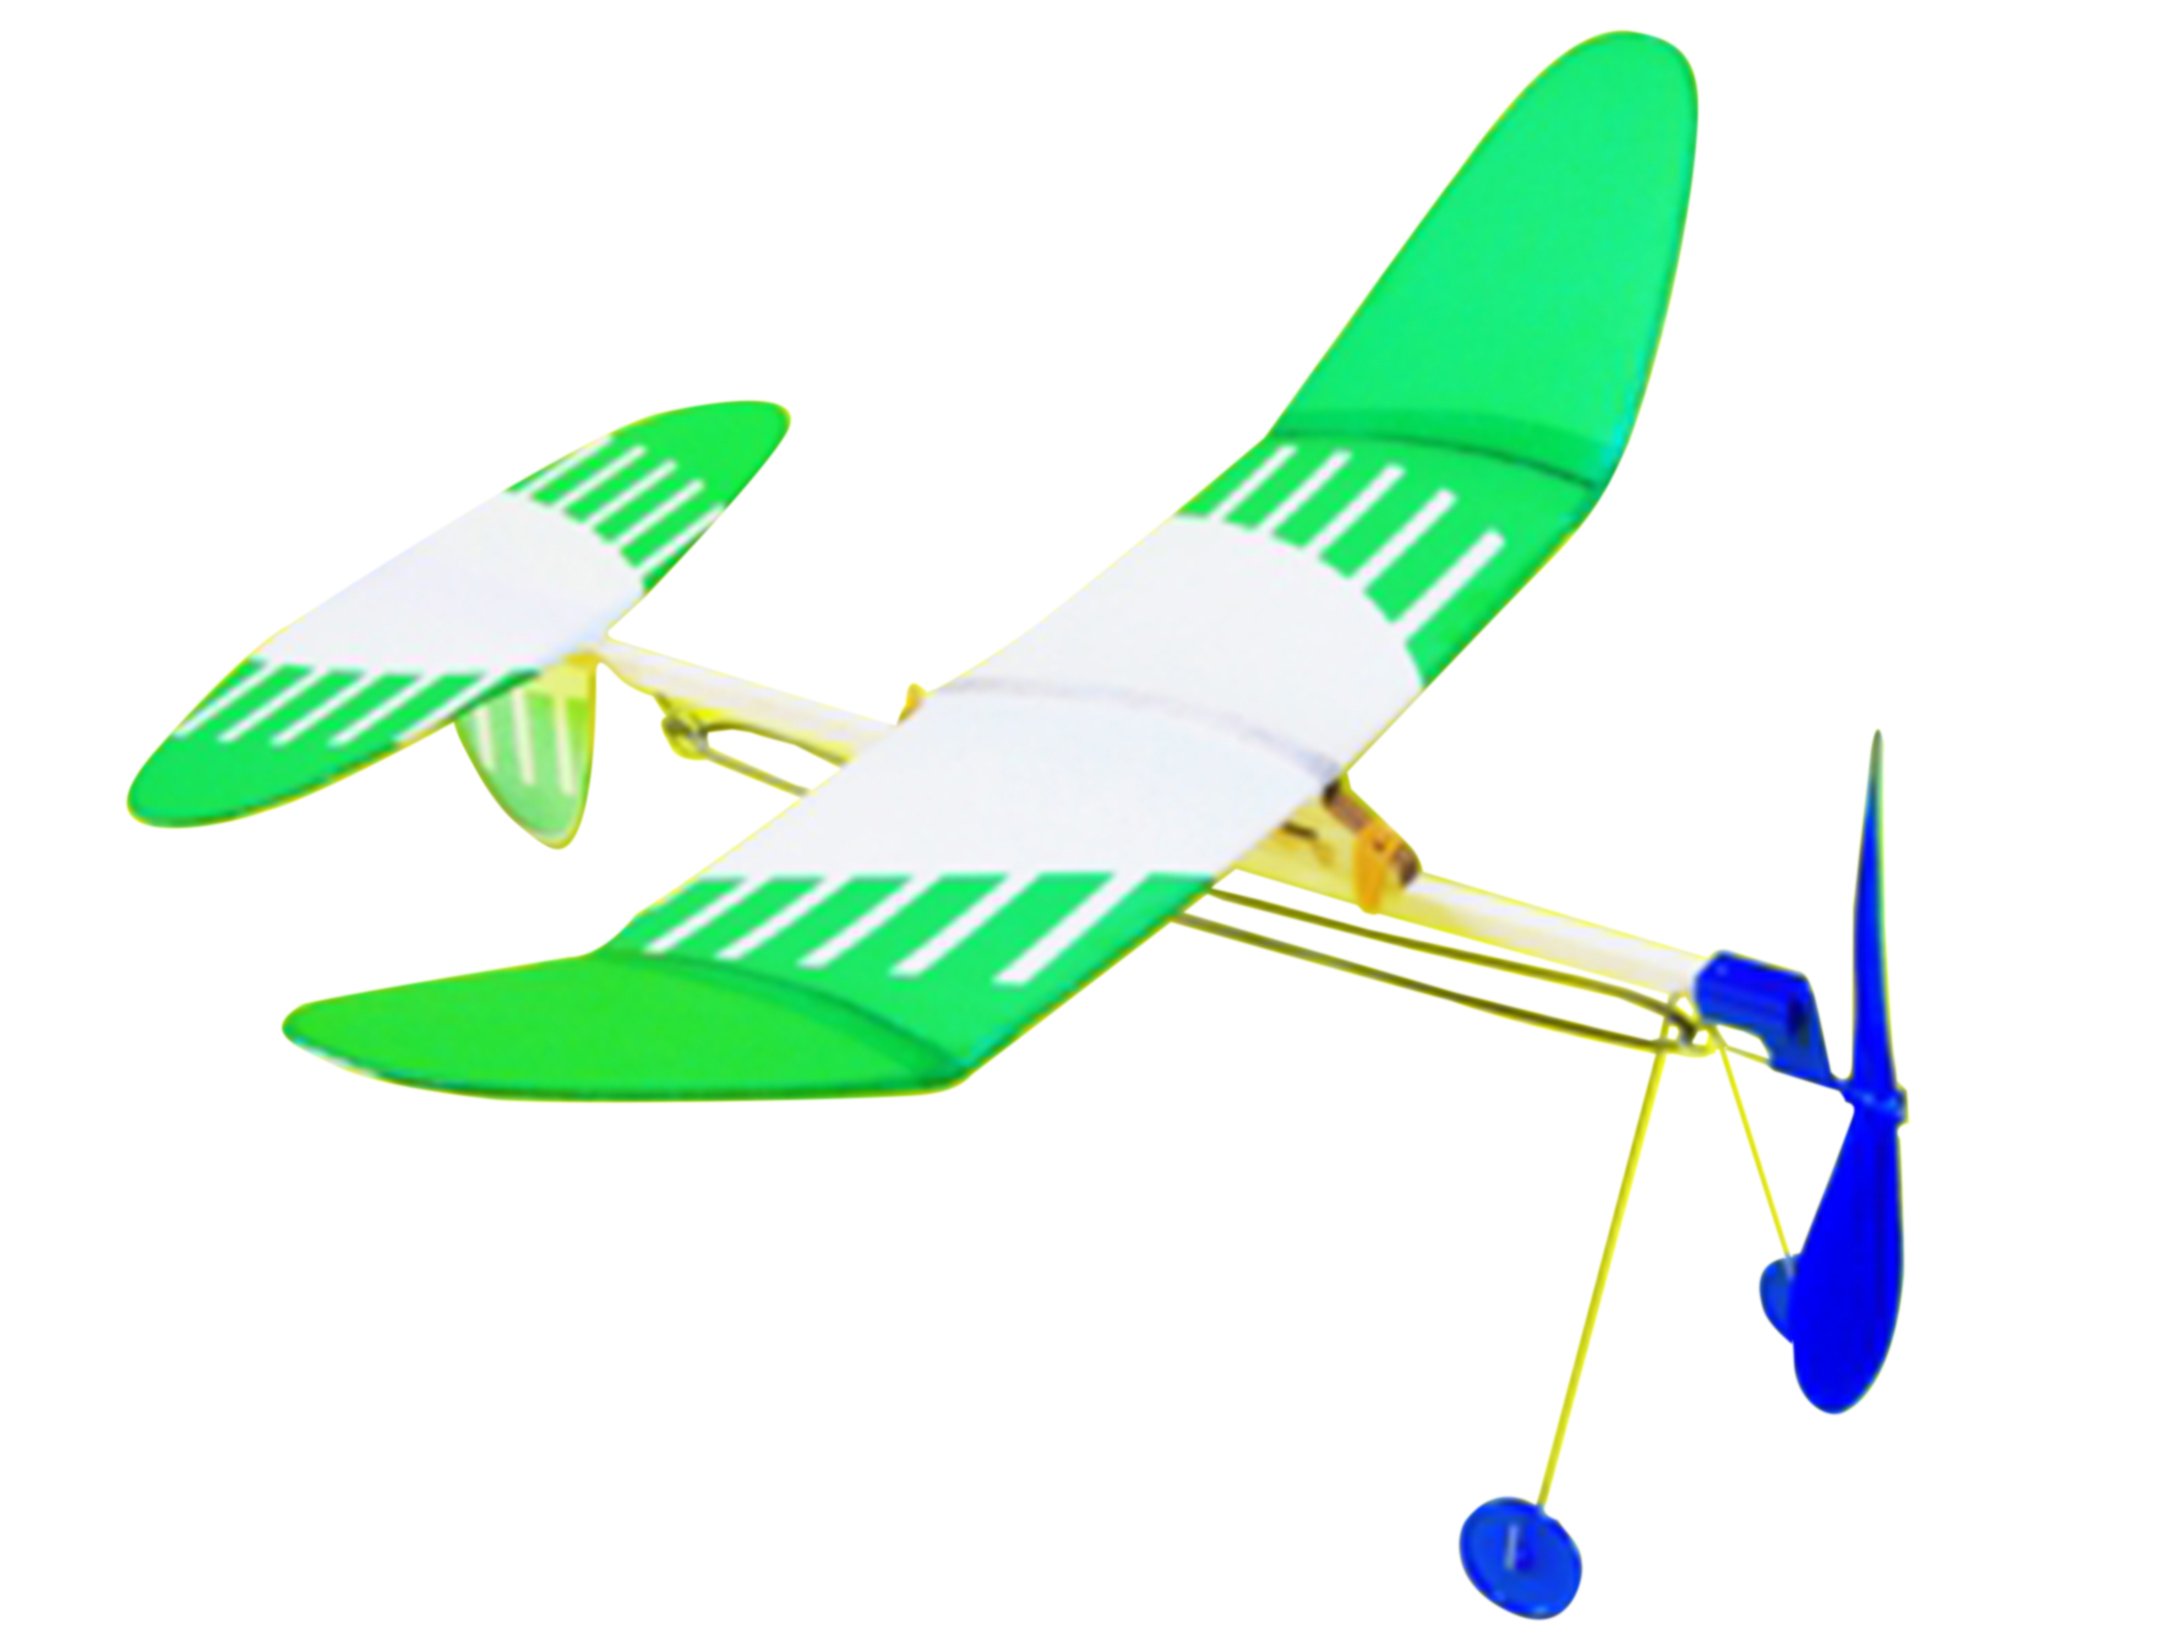 商品情報商品の説明説明 スタジオミド 「ジュニアライトプレーン パロット」 ゴム動力模型飛行機キットです。大きさは、A級ライトプレーンの約2/3程度。作りやすく、かわいく、良く飛ぶホビープレーンの新カテゴリージュニアライトプレーンシリーズで...